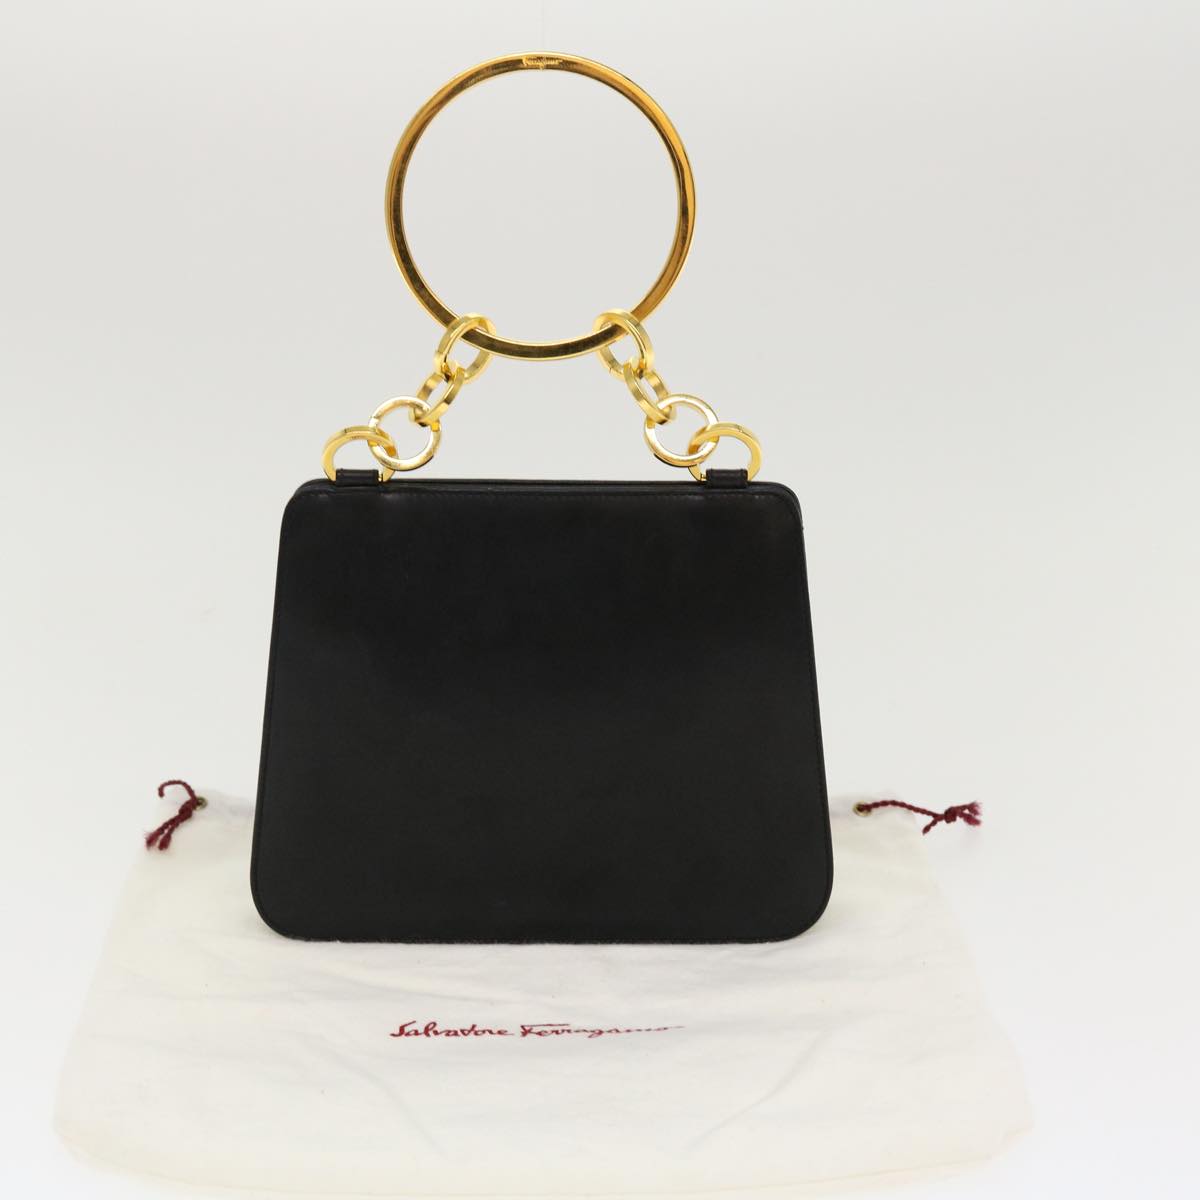 Salvatore Ferragamo Hand Bag Leather Black Auth 39142